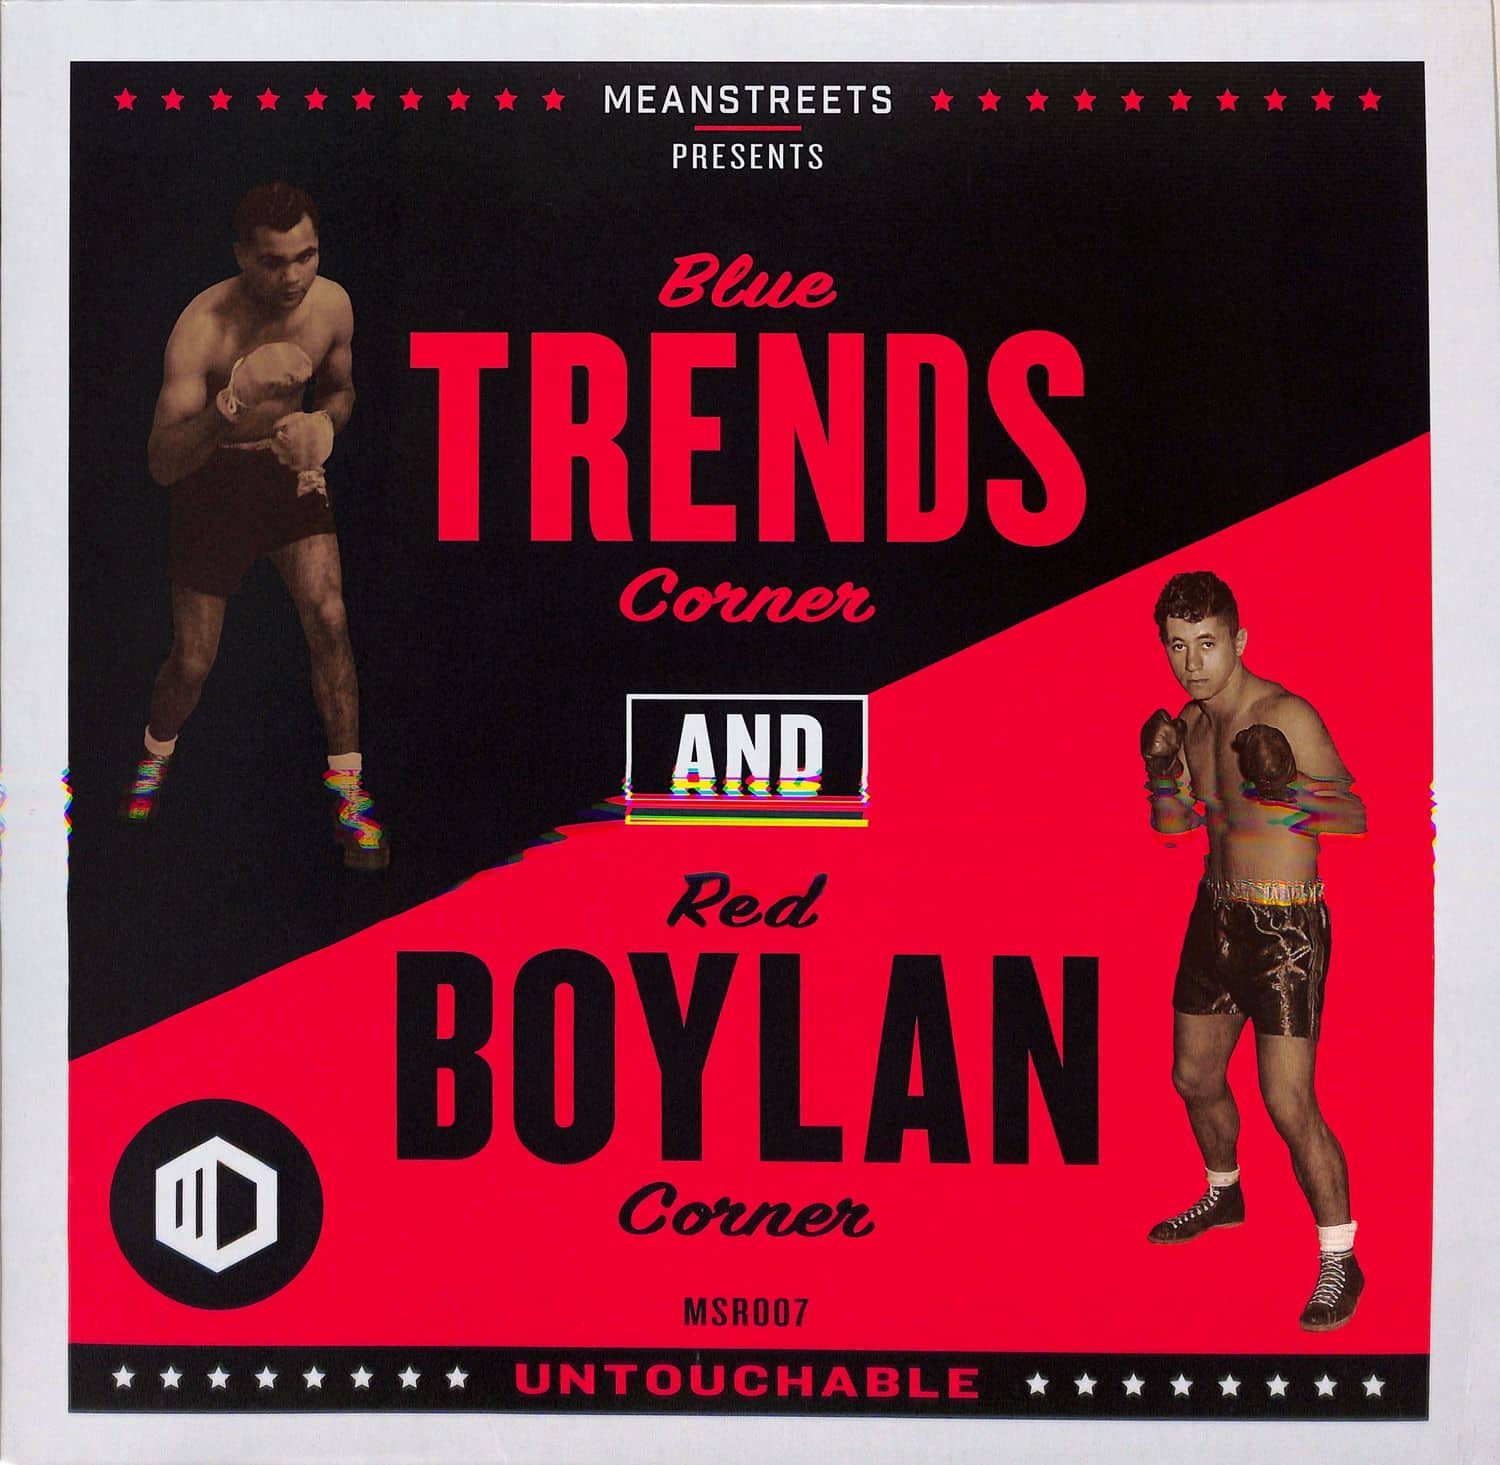 Trends & Boylan - UNTOUCHABLE EP